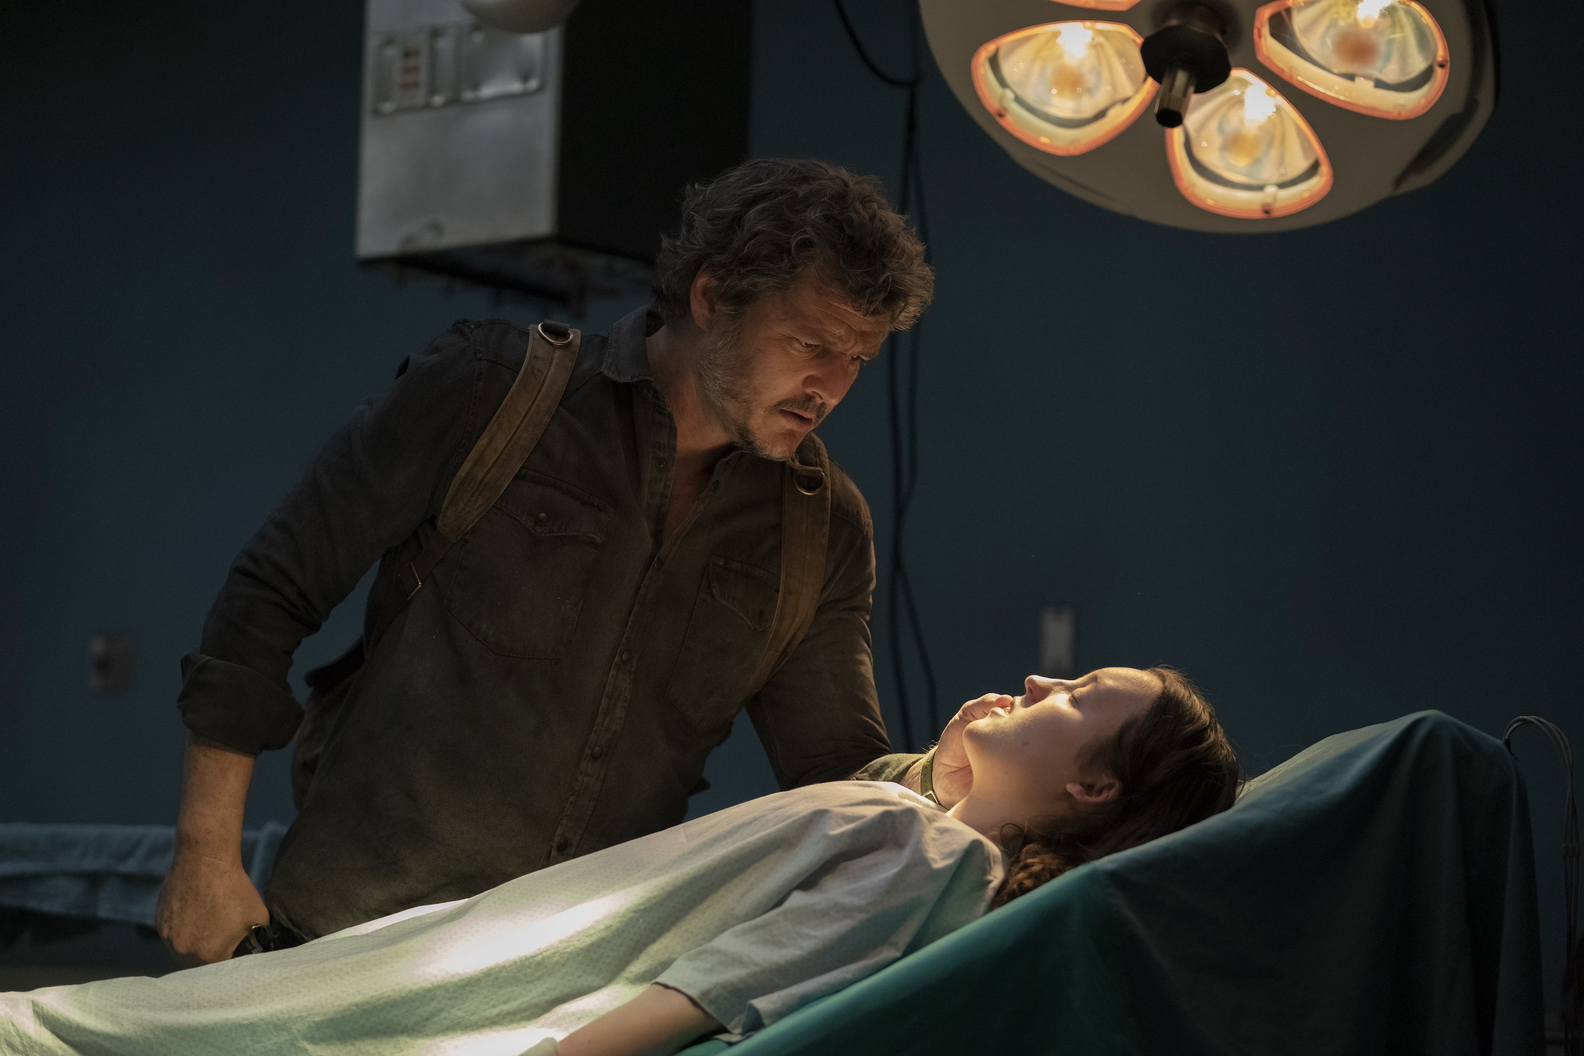 Infecção zumbi em 'The Last of Us' é real, segundo cientistas - Forbes